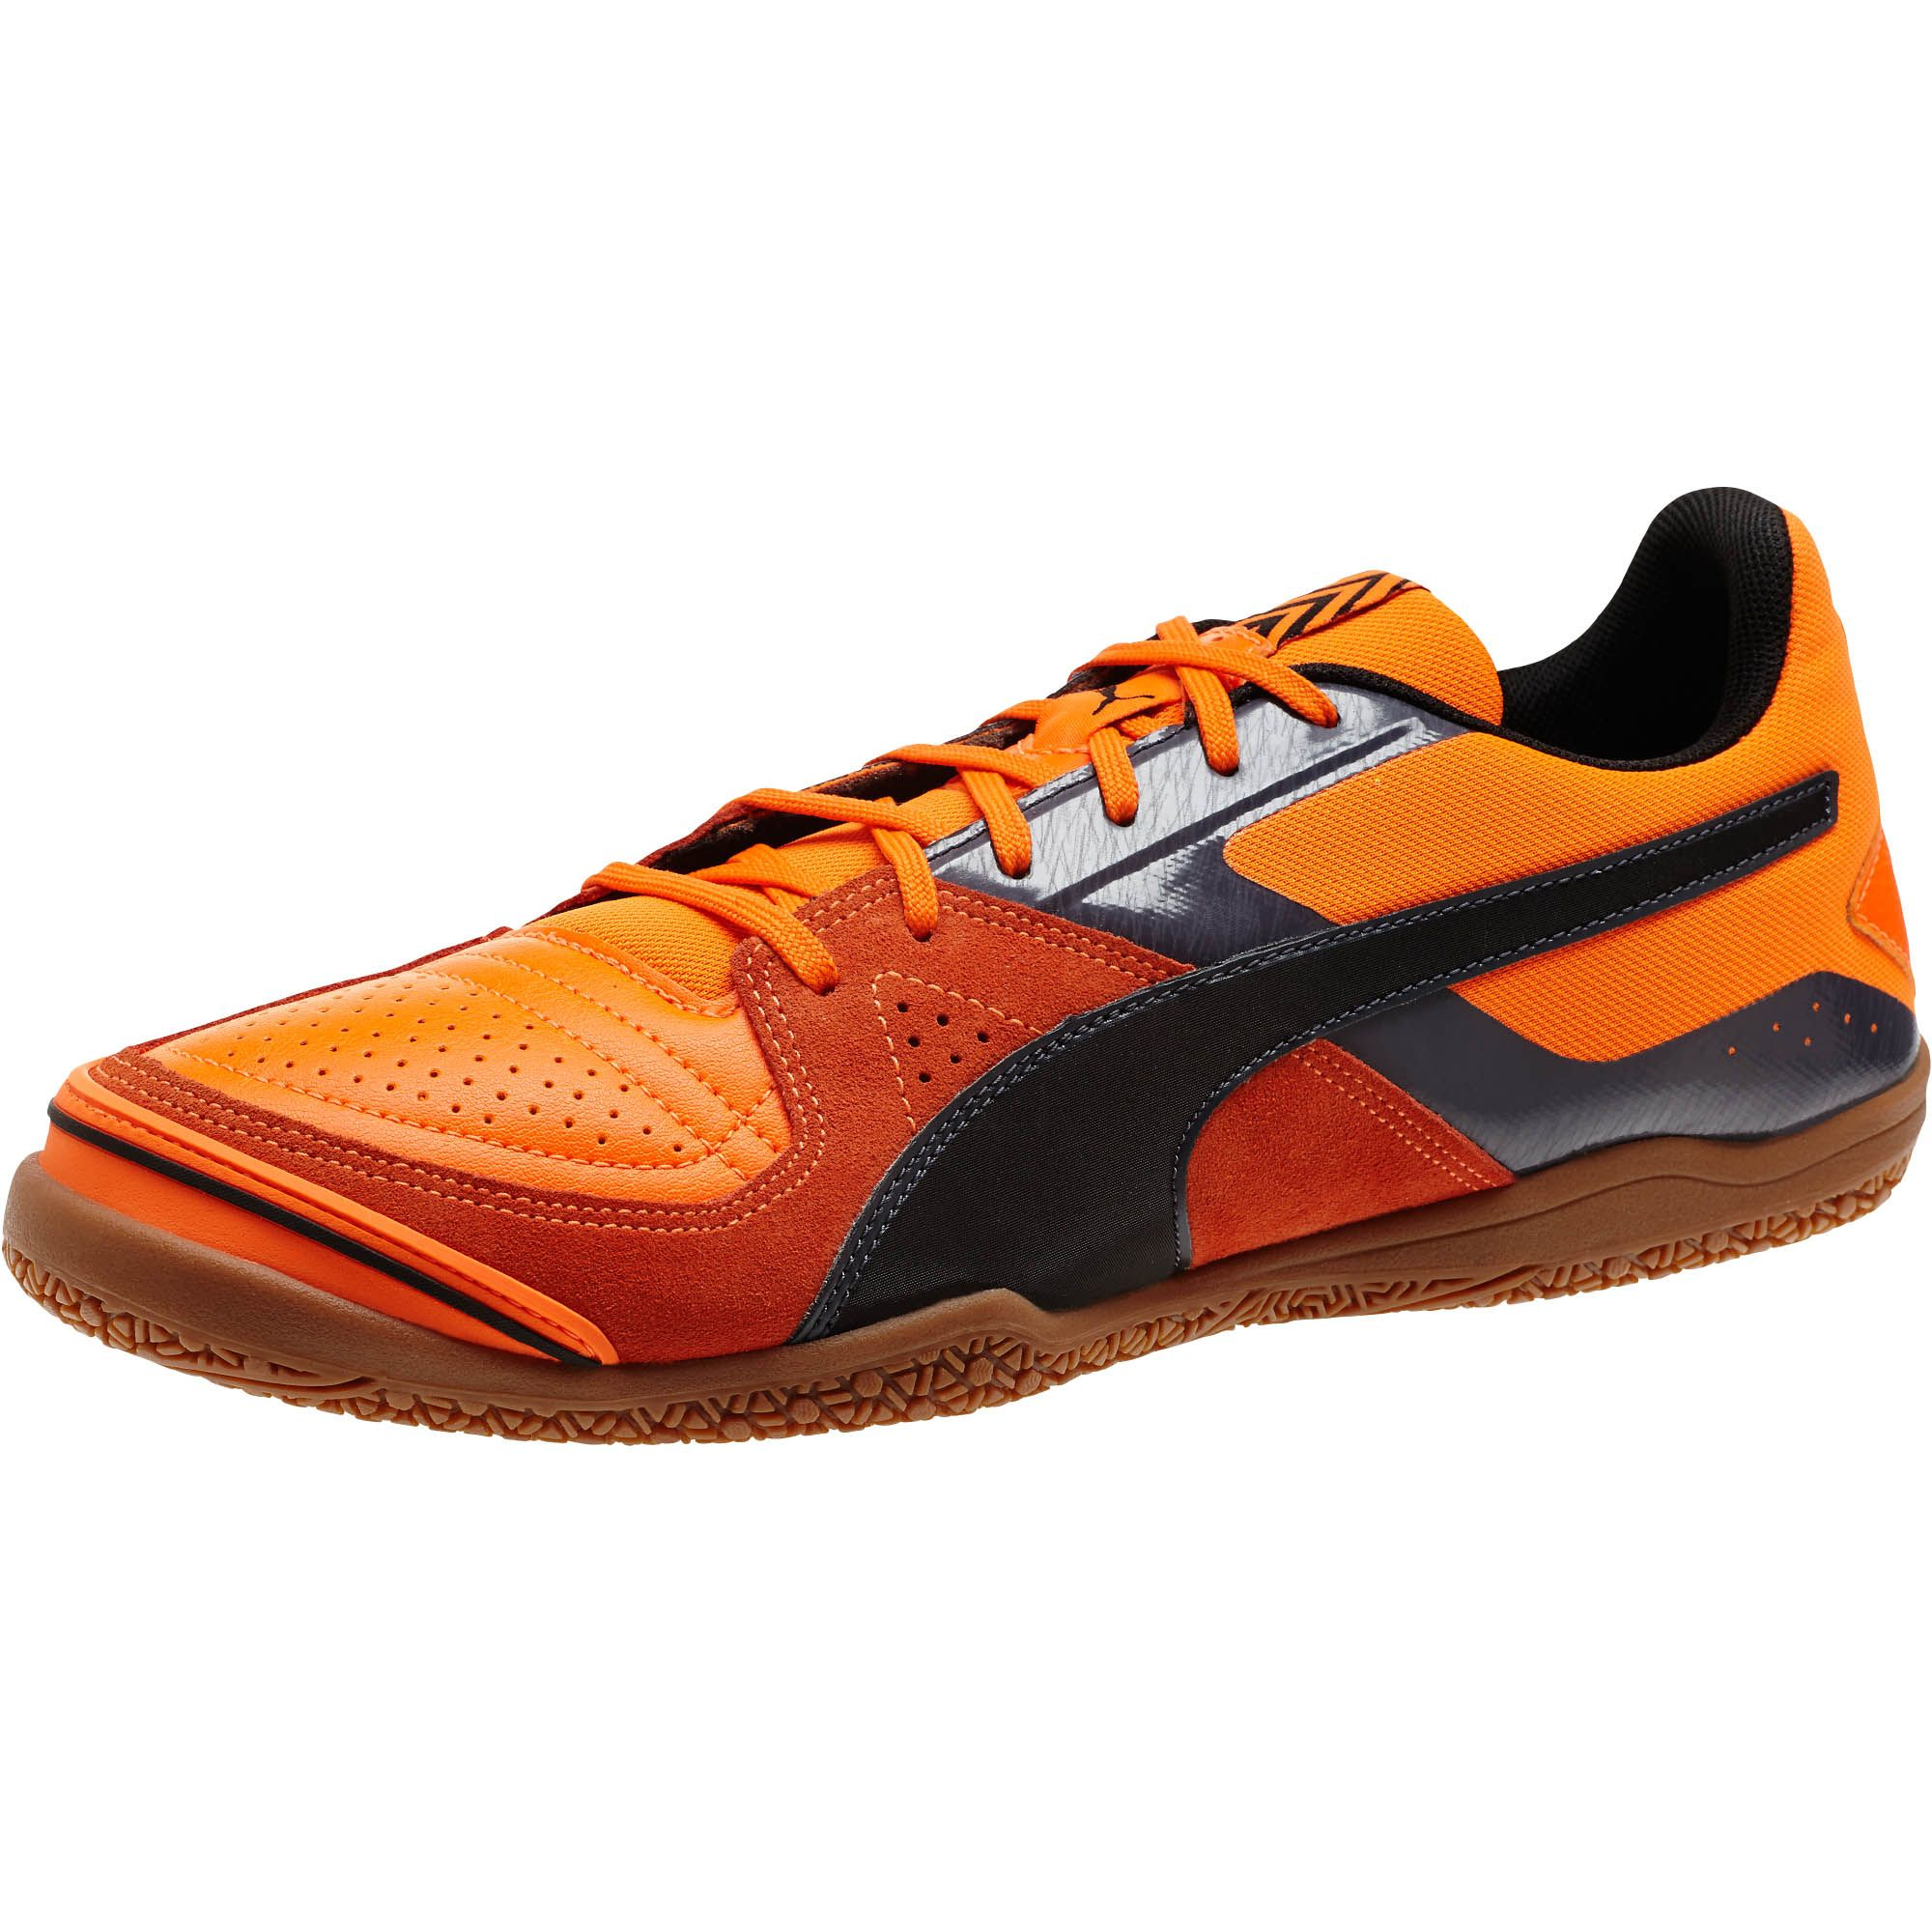 puma mens indoor soccer shoes